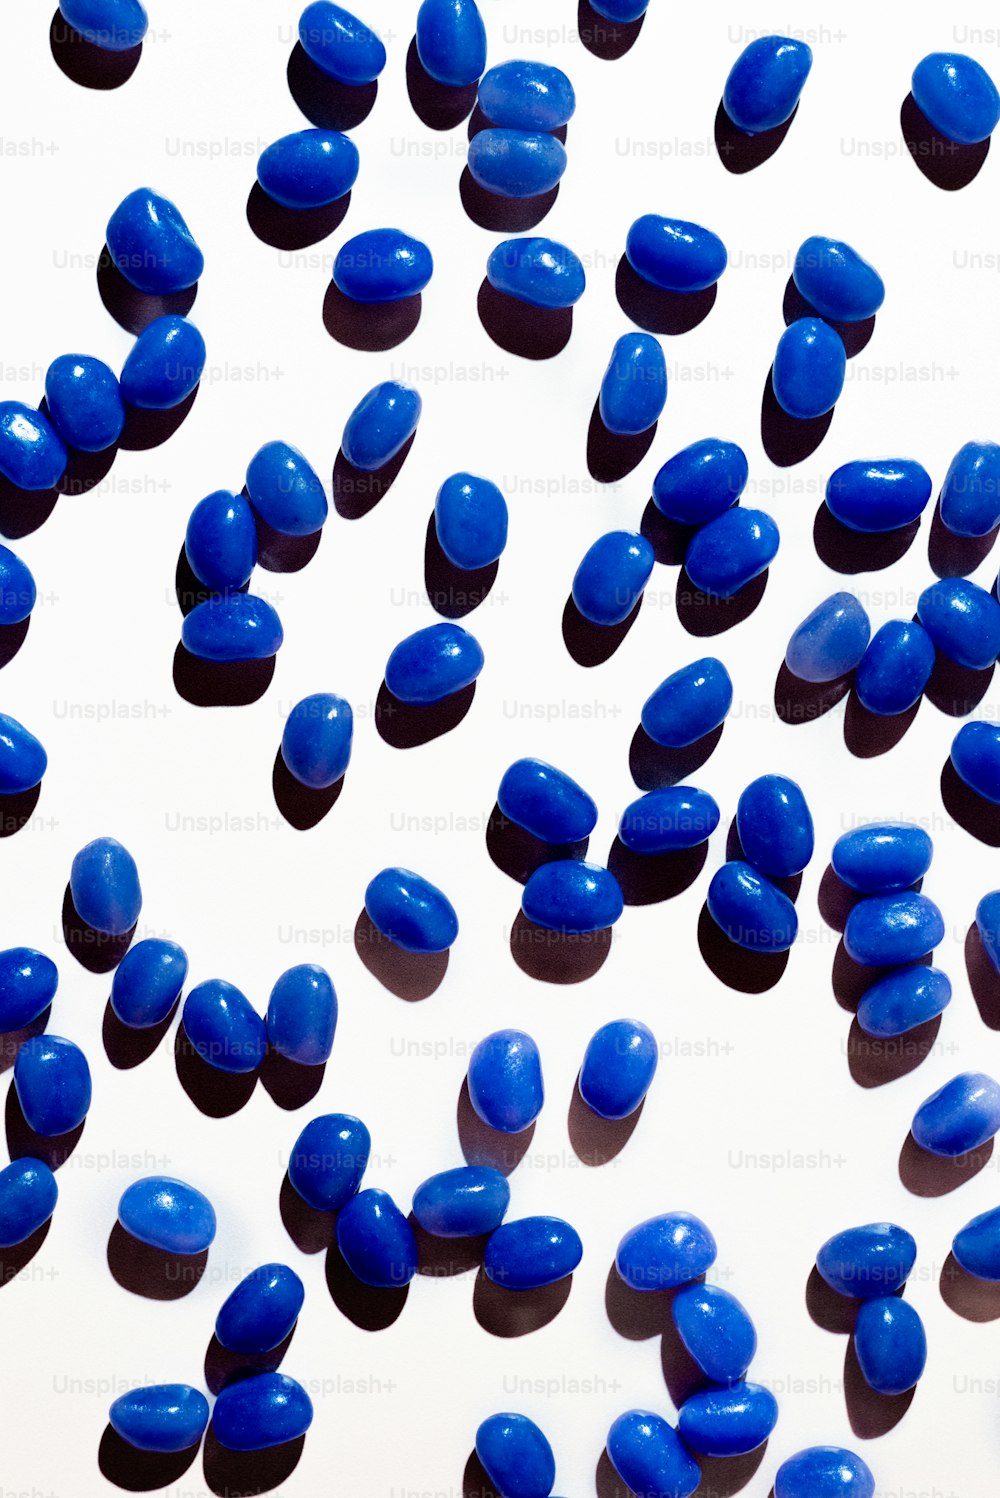 muitas pílulas azuis estão espalhadas em uma superfície branca